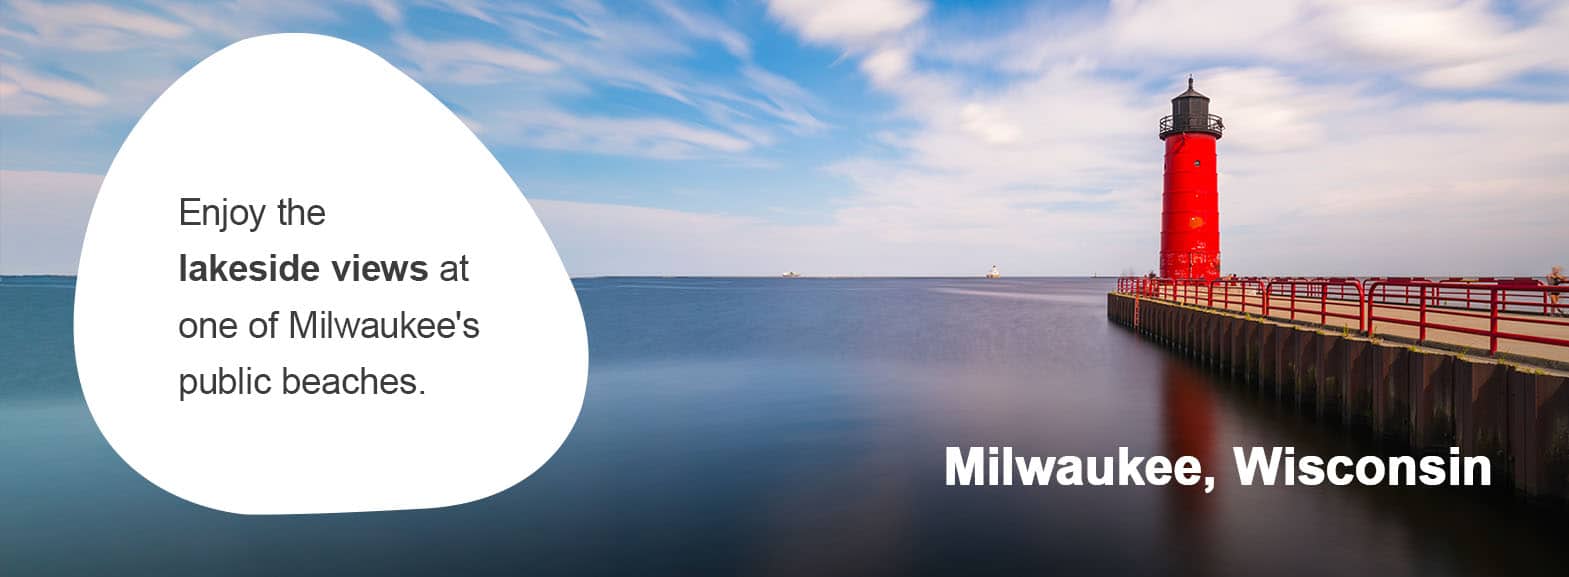 Milwaukee, Wisconsin. Enjoy the lakeside views at one of Milwaukee's public beaches. 